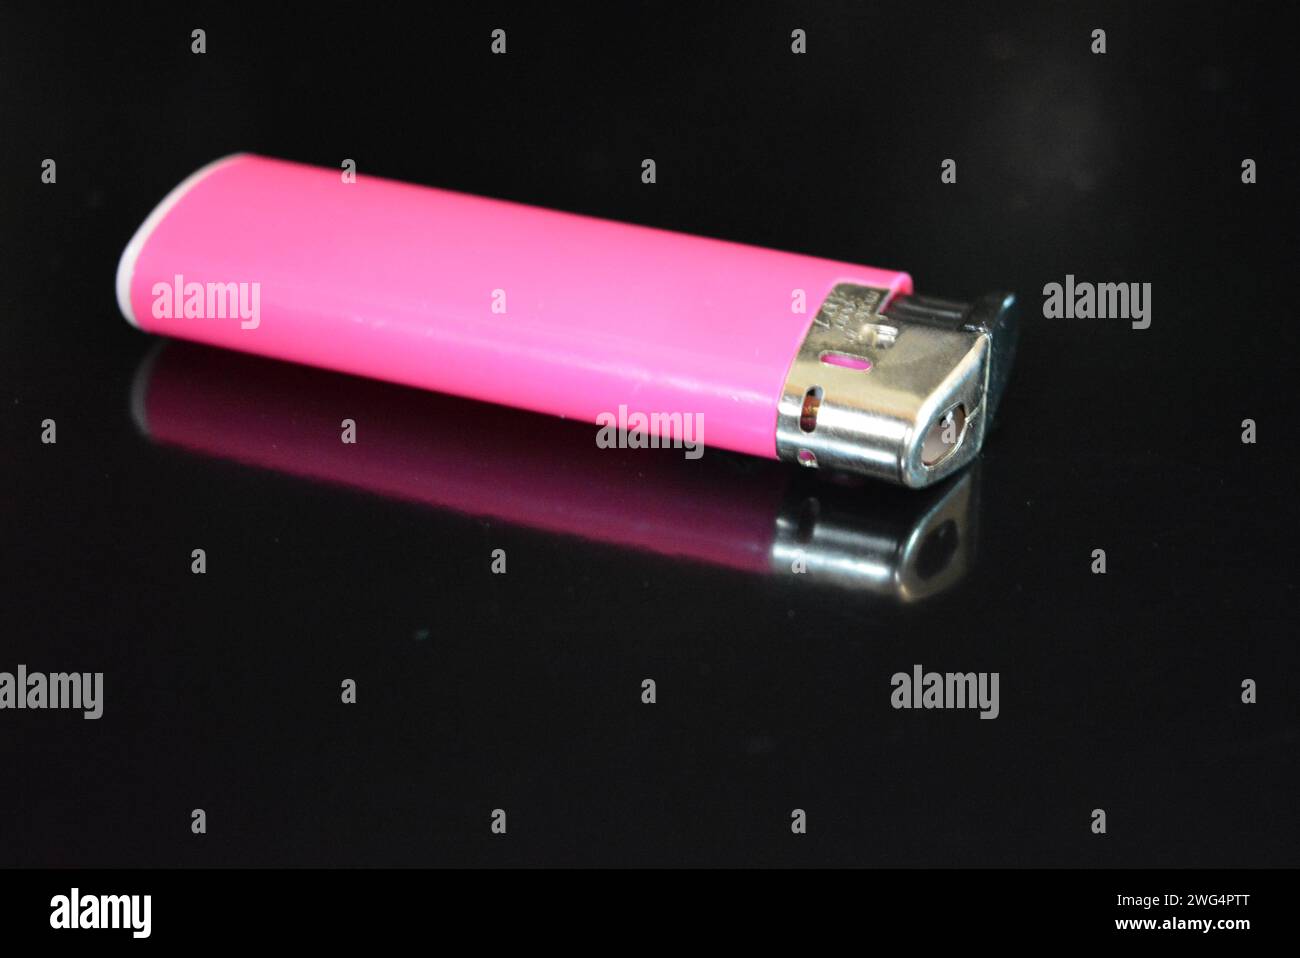 Ein rosafarbenes Kunststofffeuerzeug liegt auf einer glänzend schwarzen Oberfläche. Stockfoto